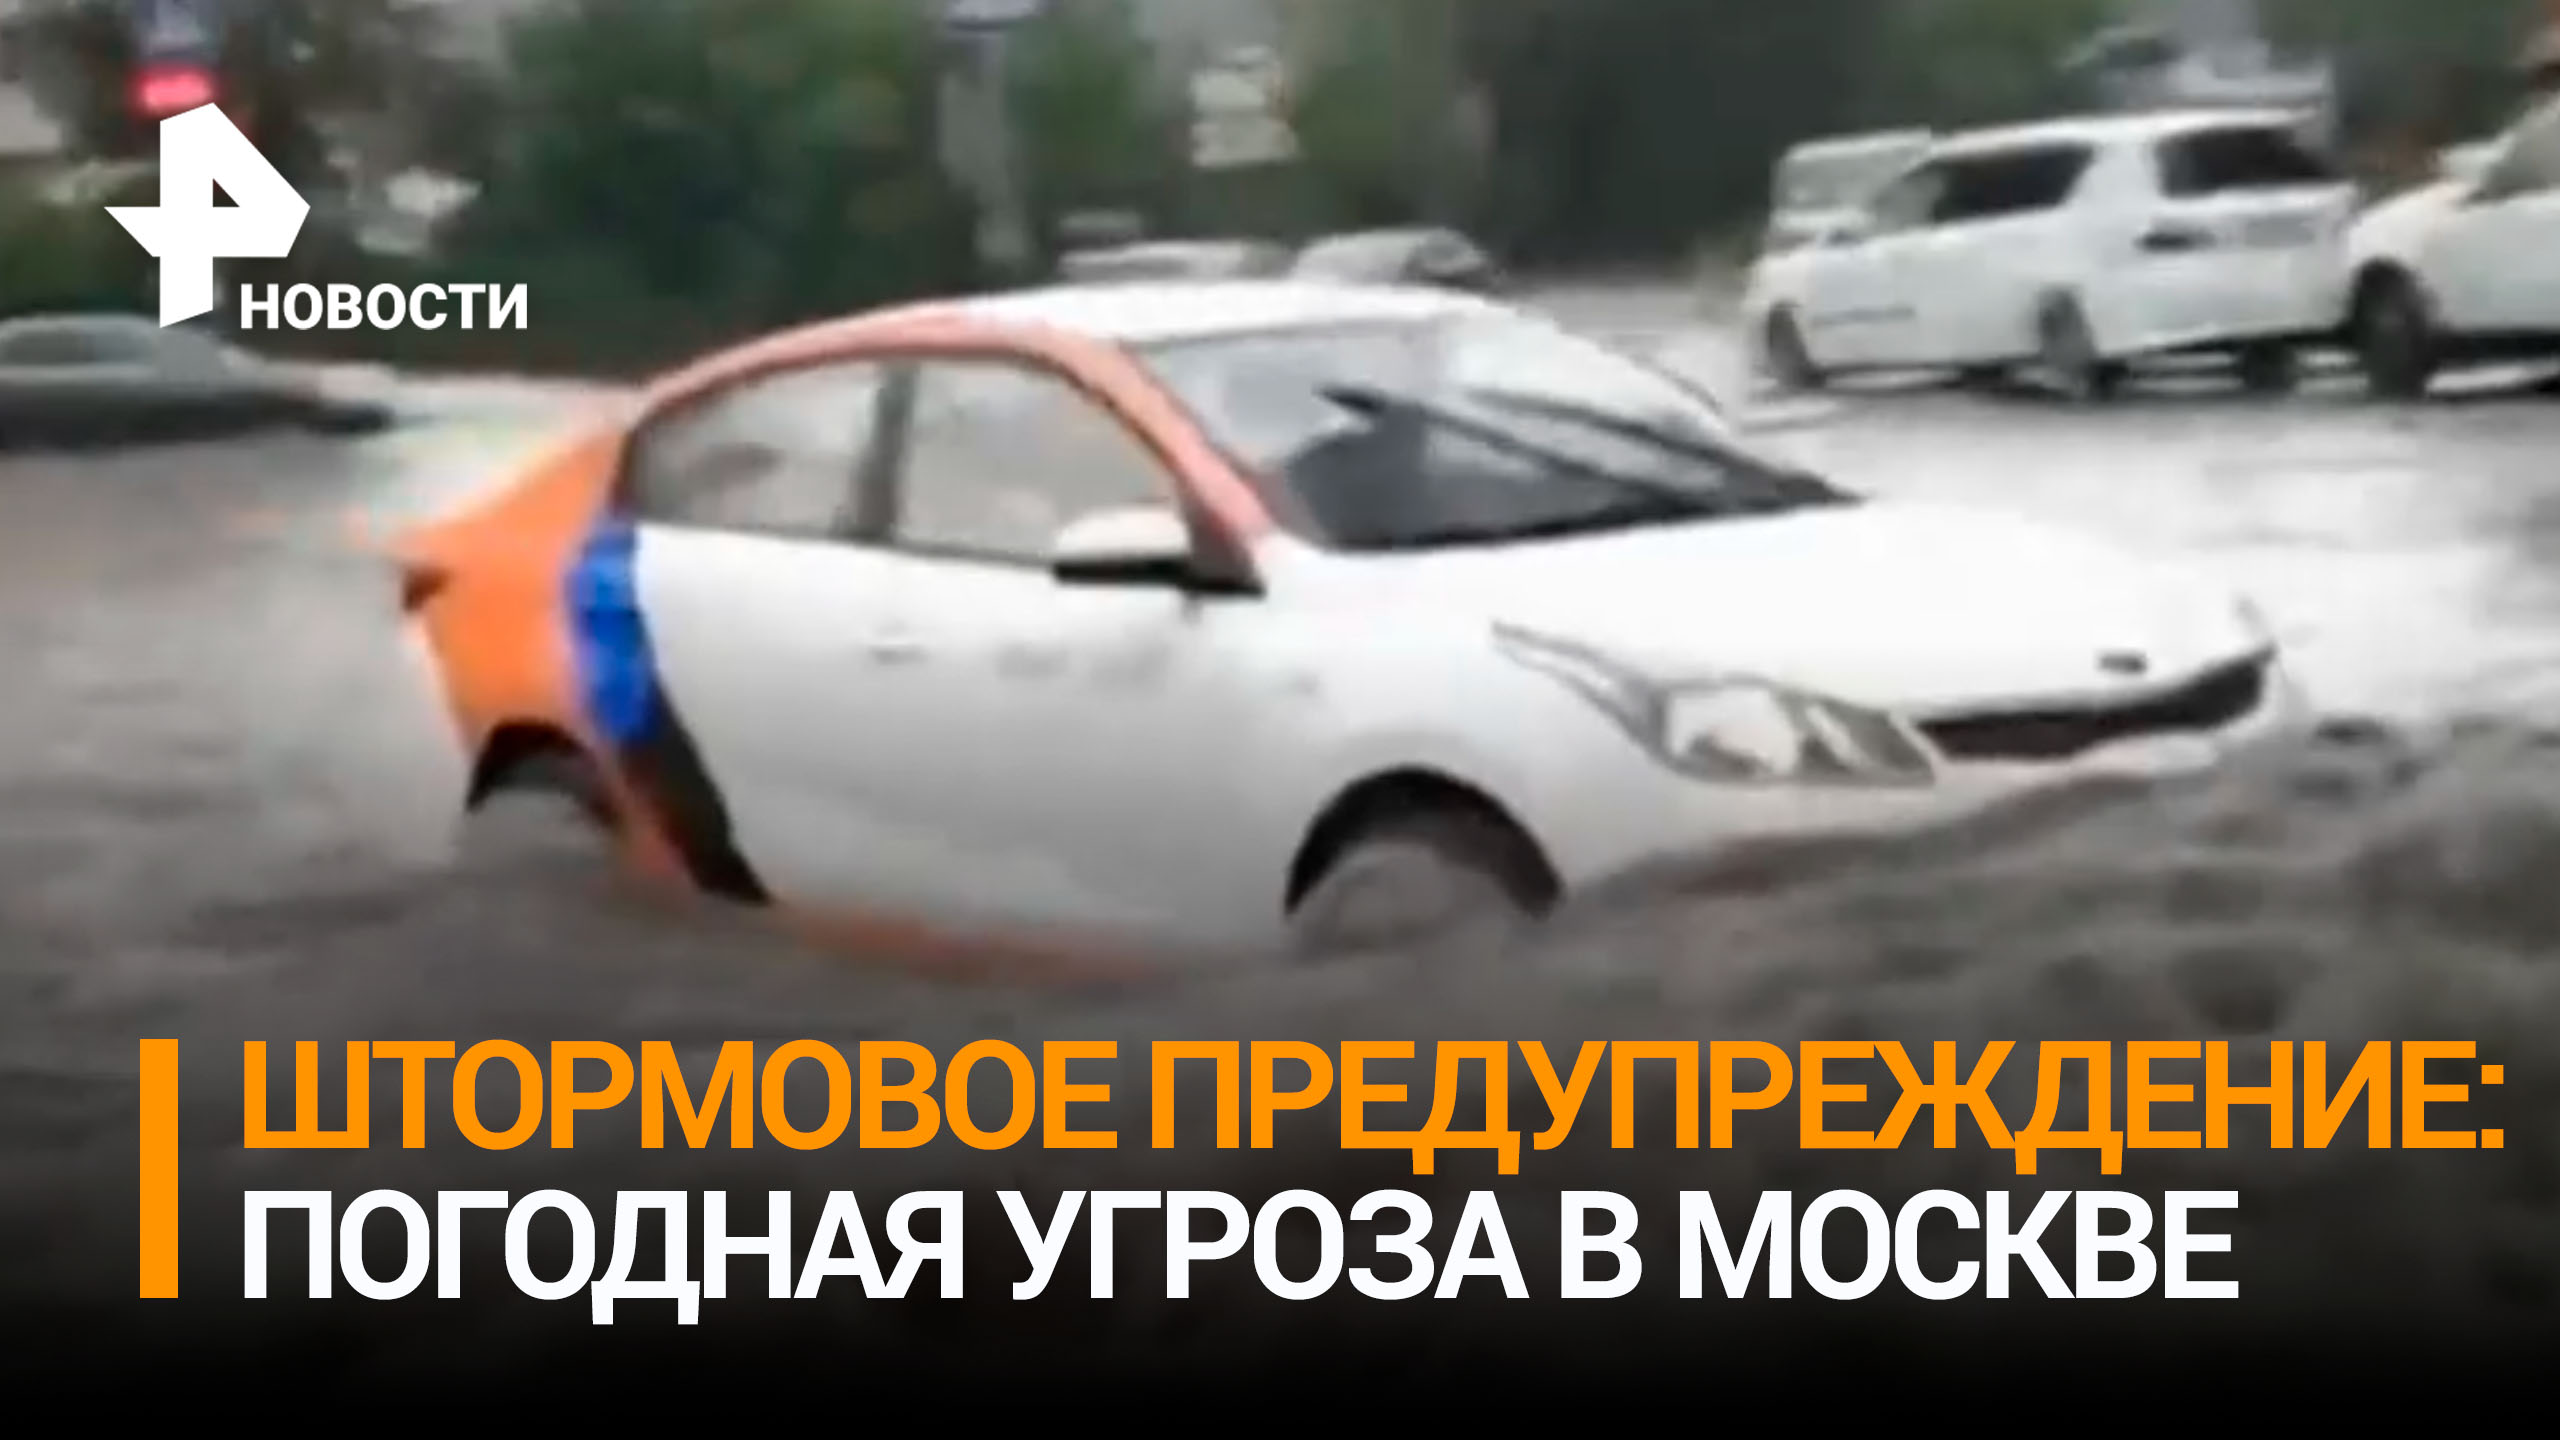 Жителей Москвы предупредили об опасной погоде / РЕН Новости